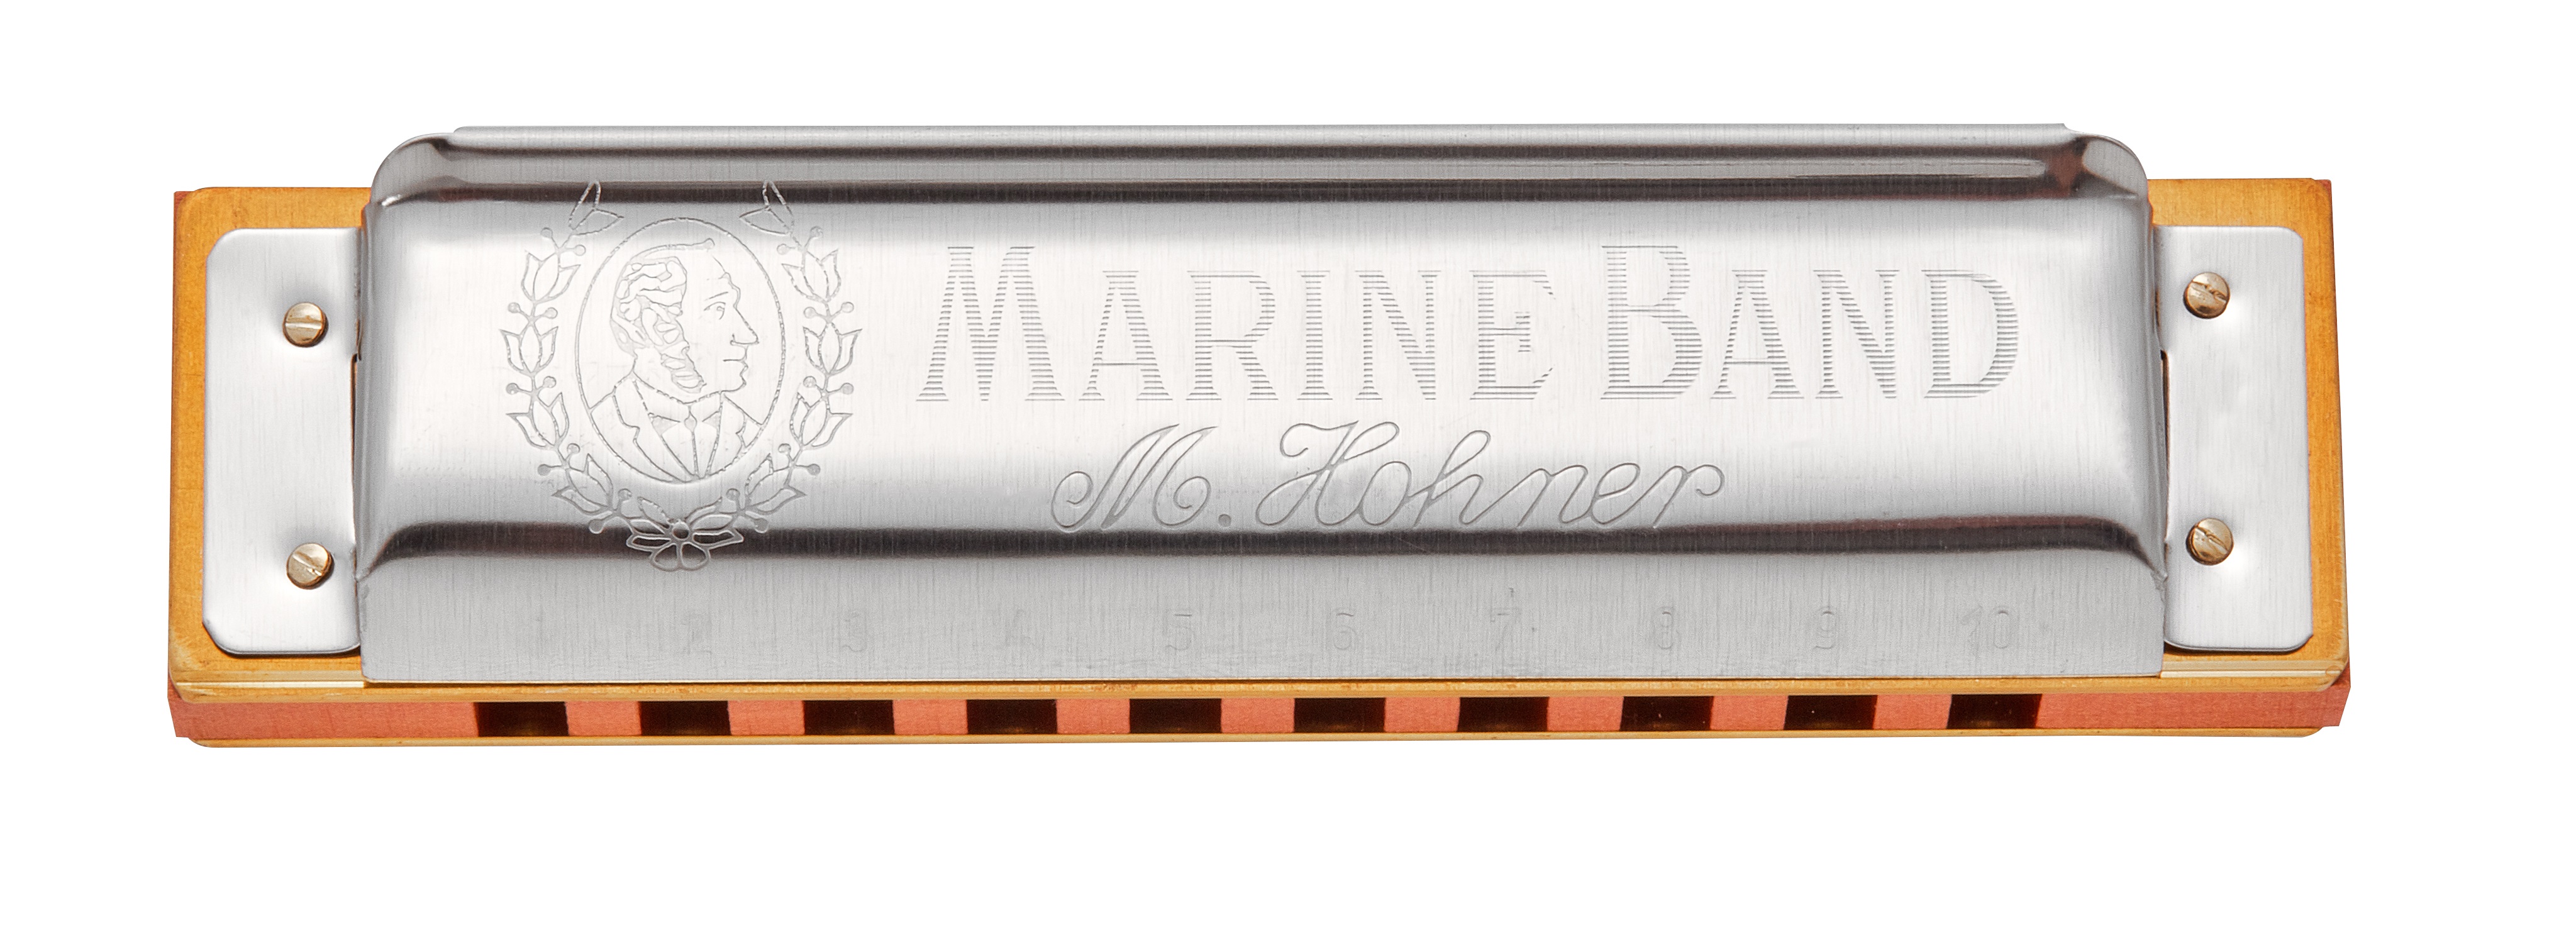 Hohner Marine Band 1896 A-major